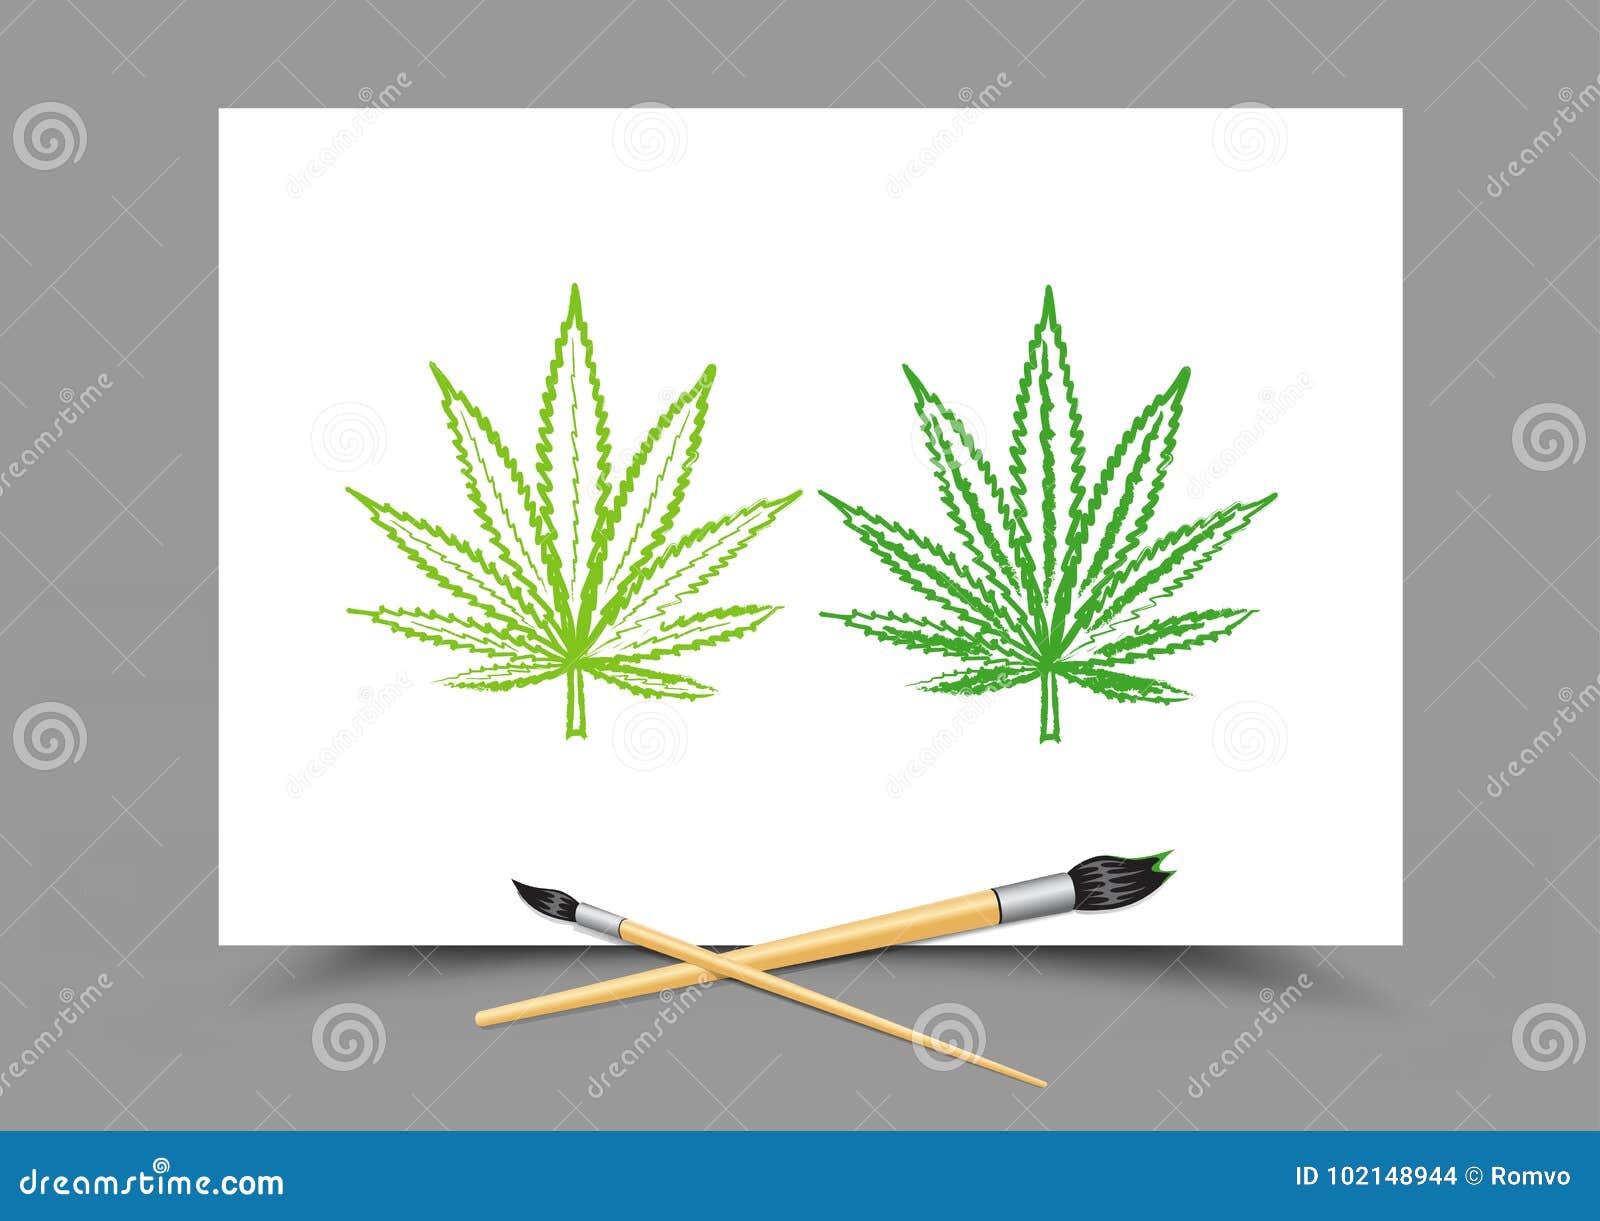 Рисуем марихуану книга марихуана выращивание